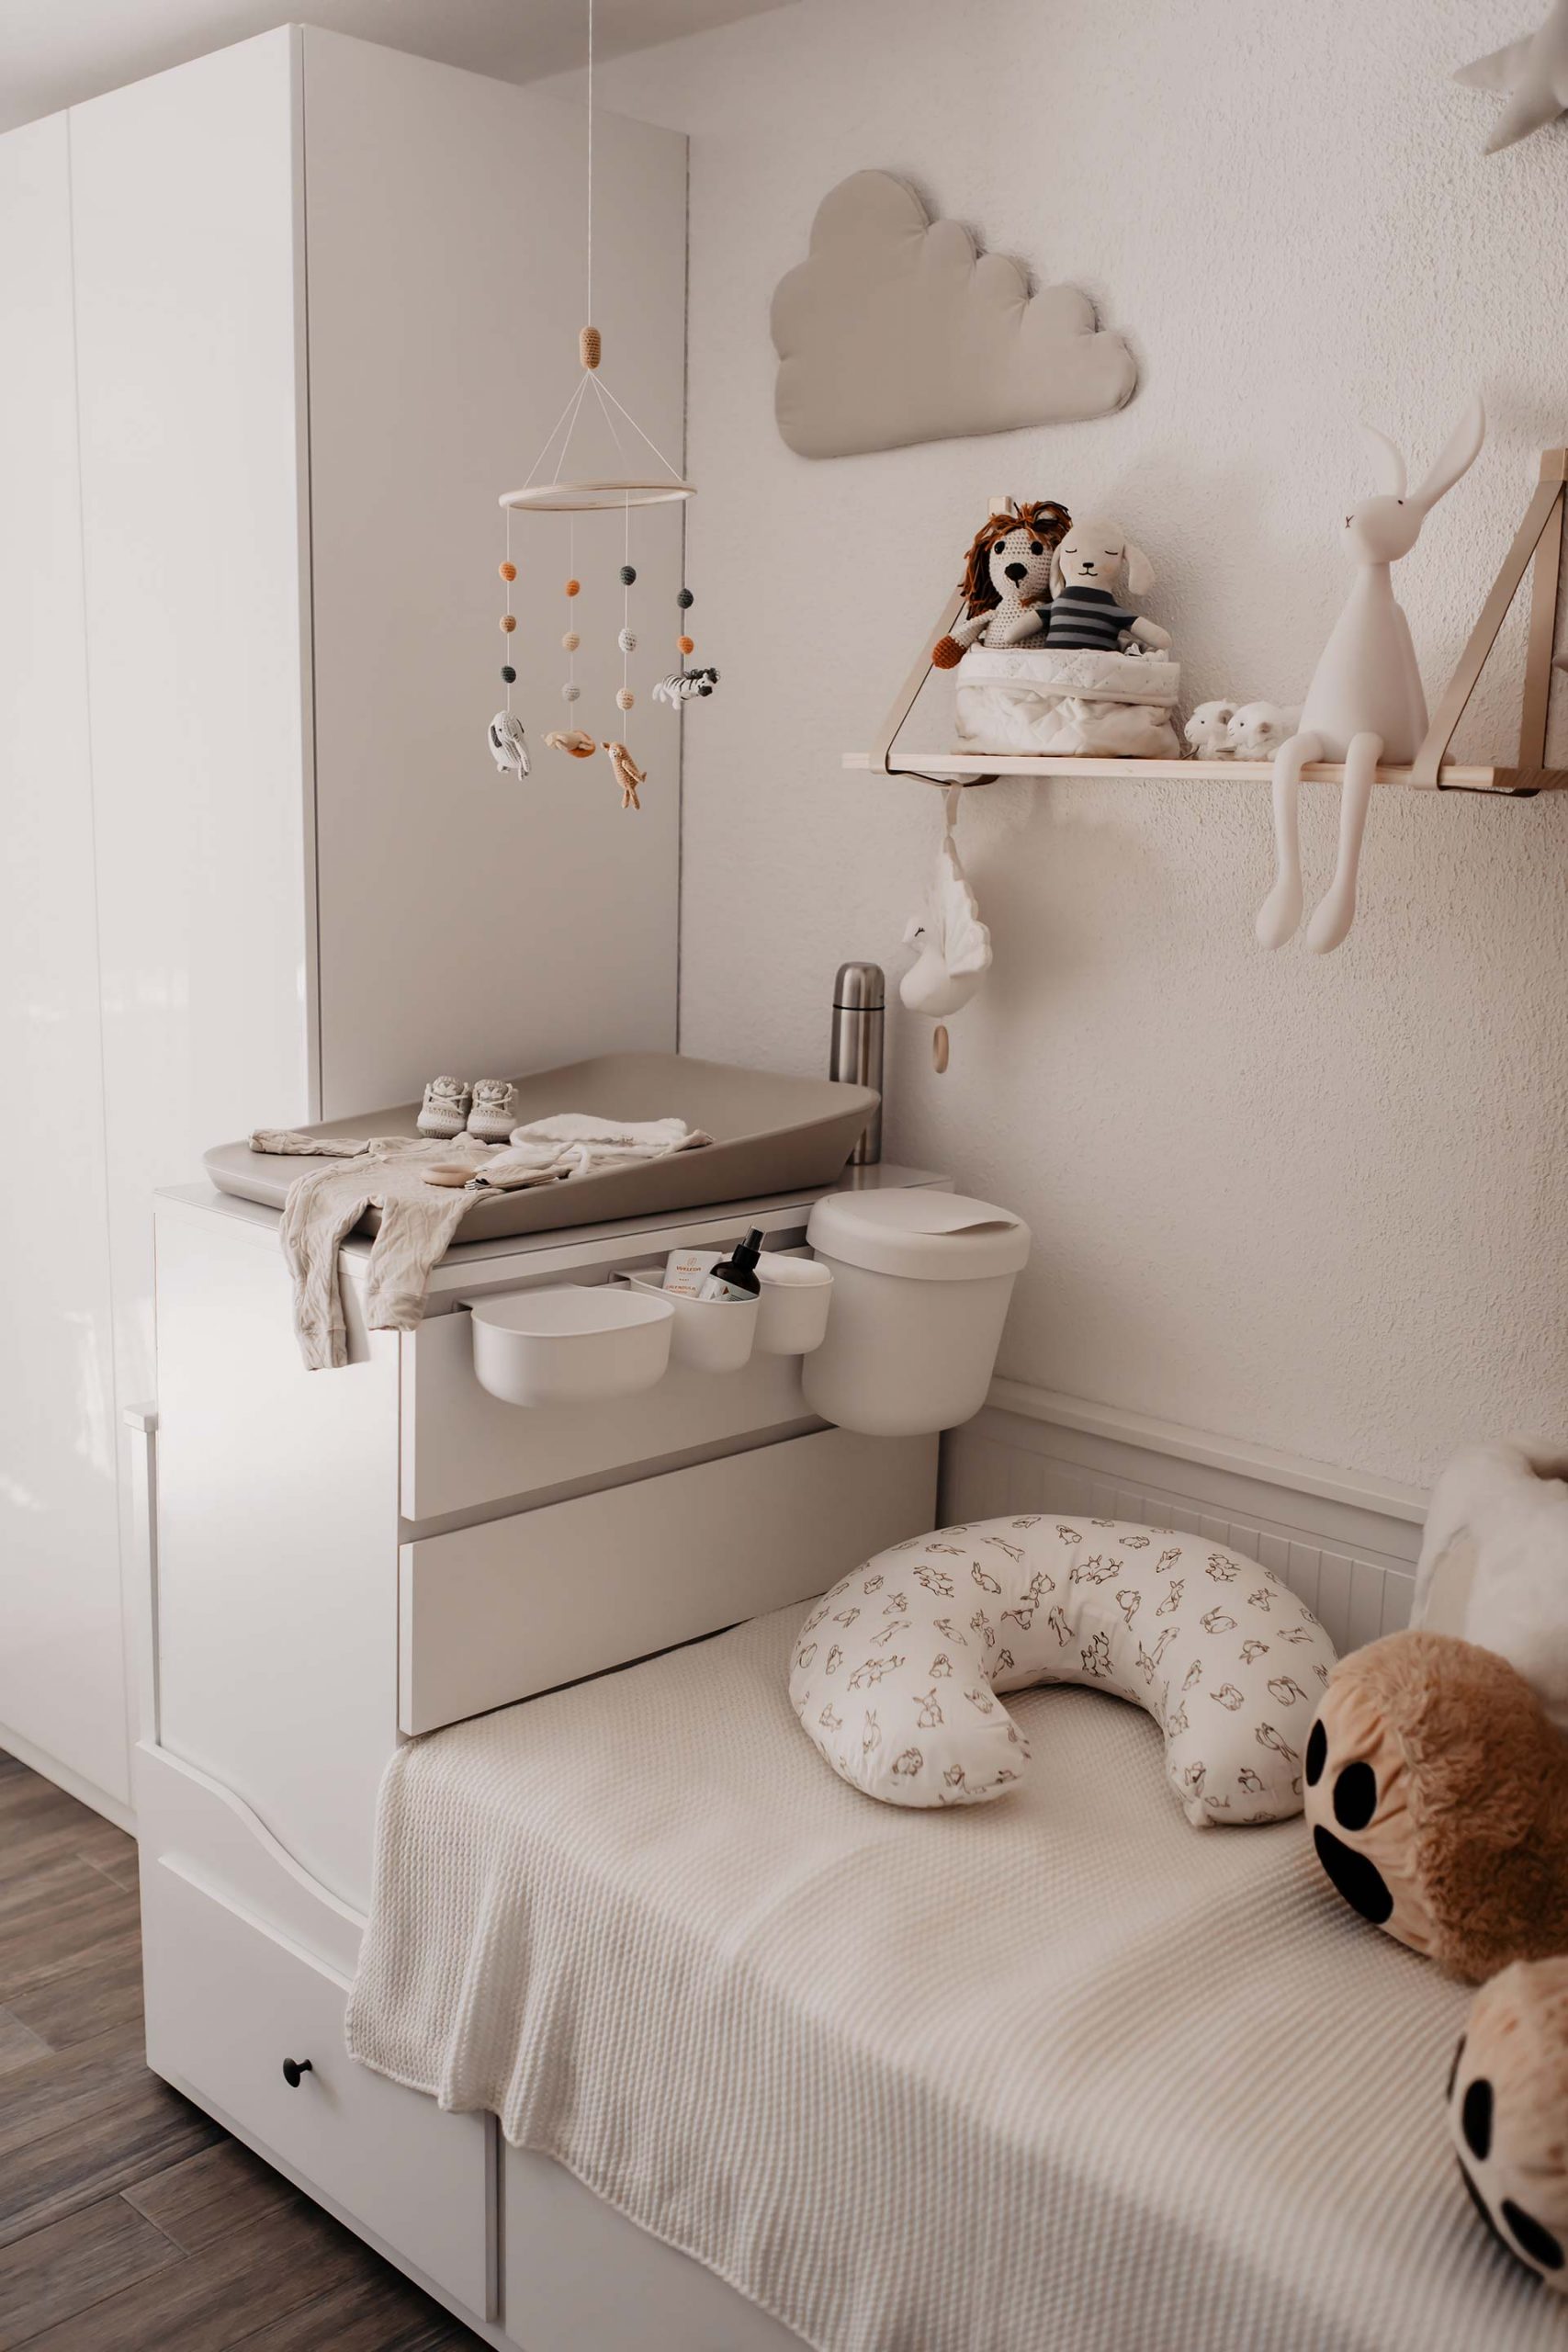 IKEA-Hack fürs Babyzimmer: So haben wir aus Hemnes Tagesbett und Malm Wickelkommode einen individuellen Wickelbereich geschaffen. Mehr am Mamablog www.whoismocca.com